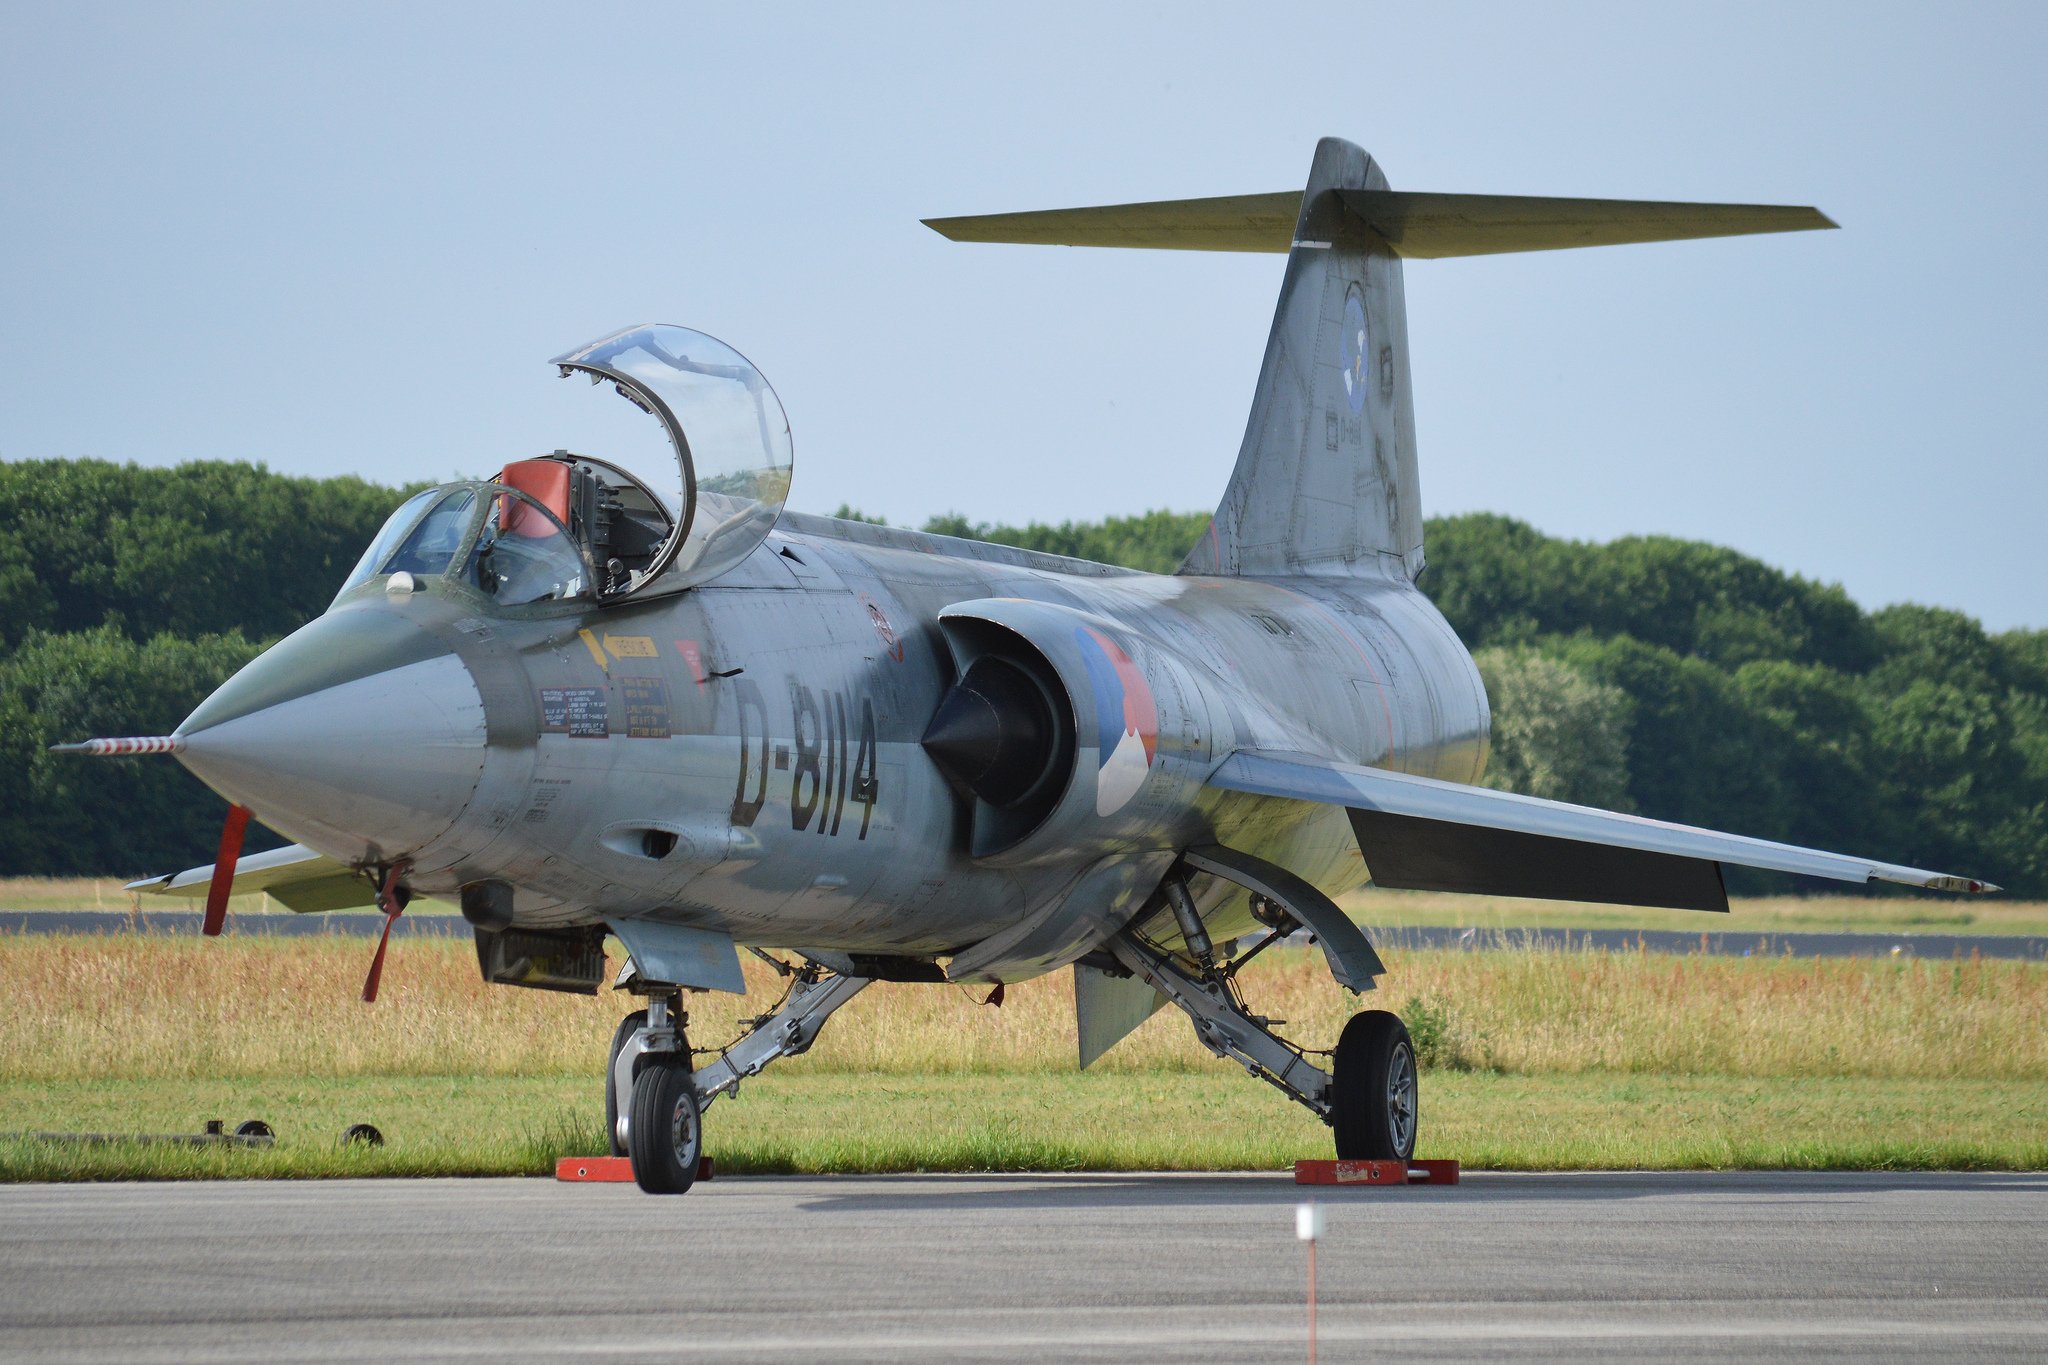 GLI AEREI PIÙ BELLI DEL MONDO 437090-aircrafts-army-fighter-jets-usa-lockheed-f-104-starfighter-2